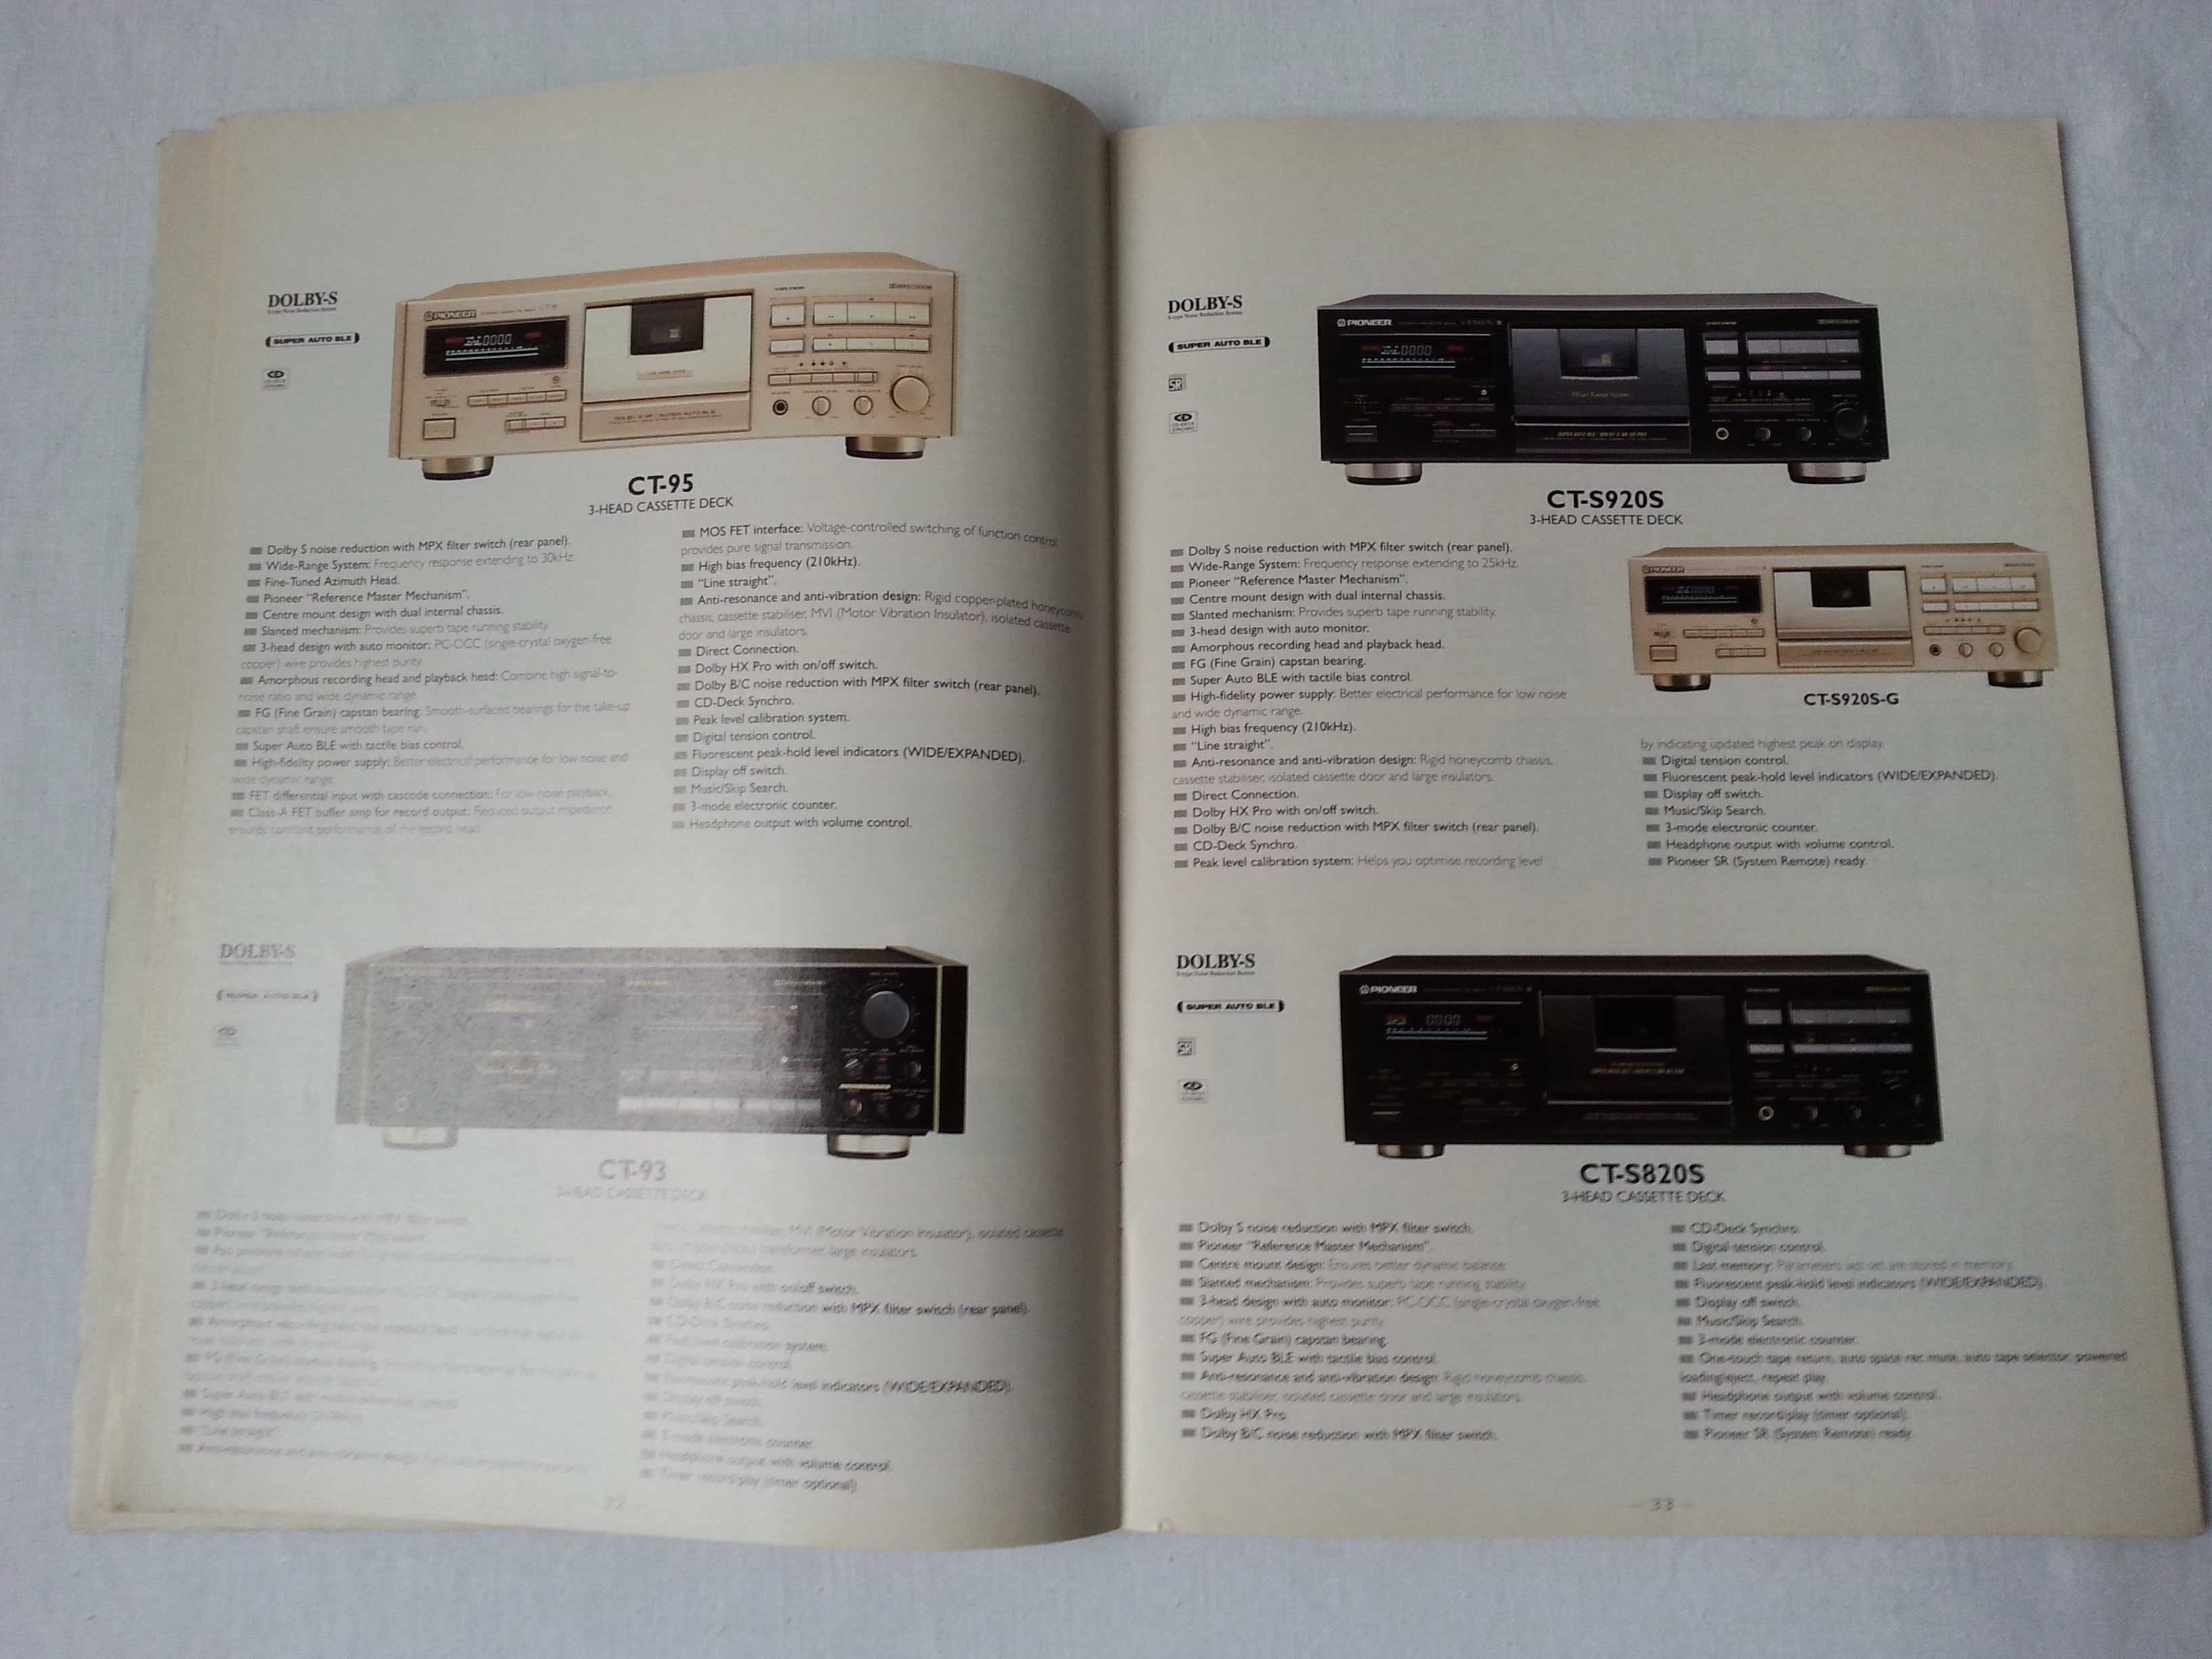 Katalog Pioneer Audio Video 1993-94